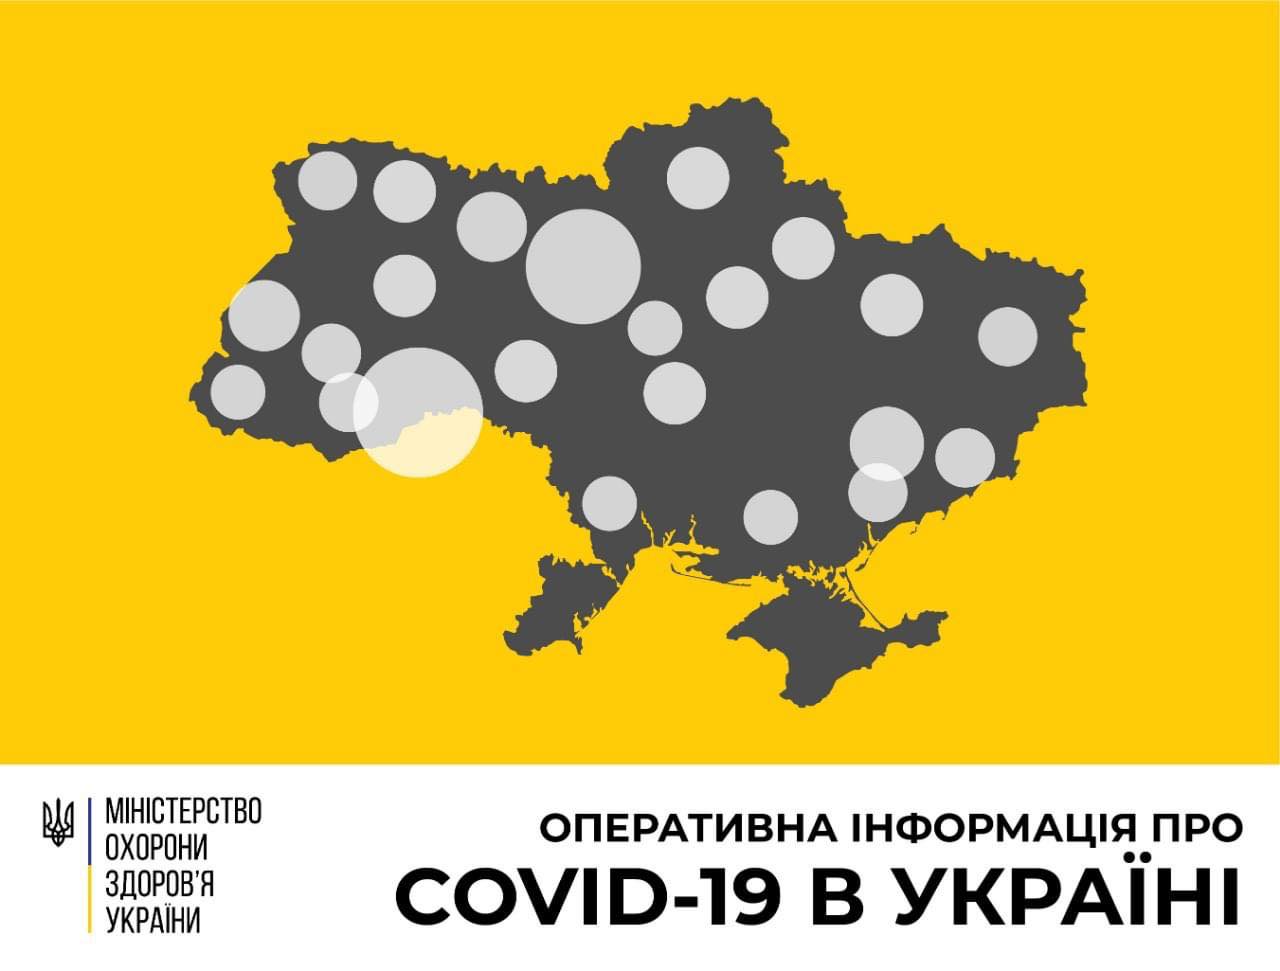 В Україні зафіксовано 669 випадків коронавірусної хвороби COVID-19 - МОЗ